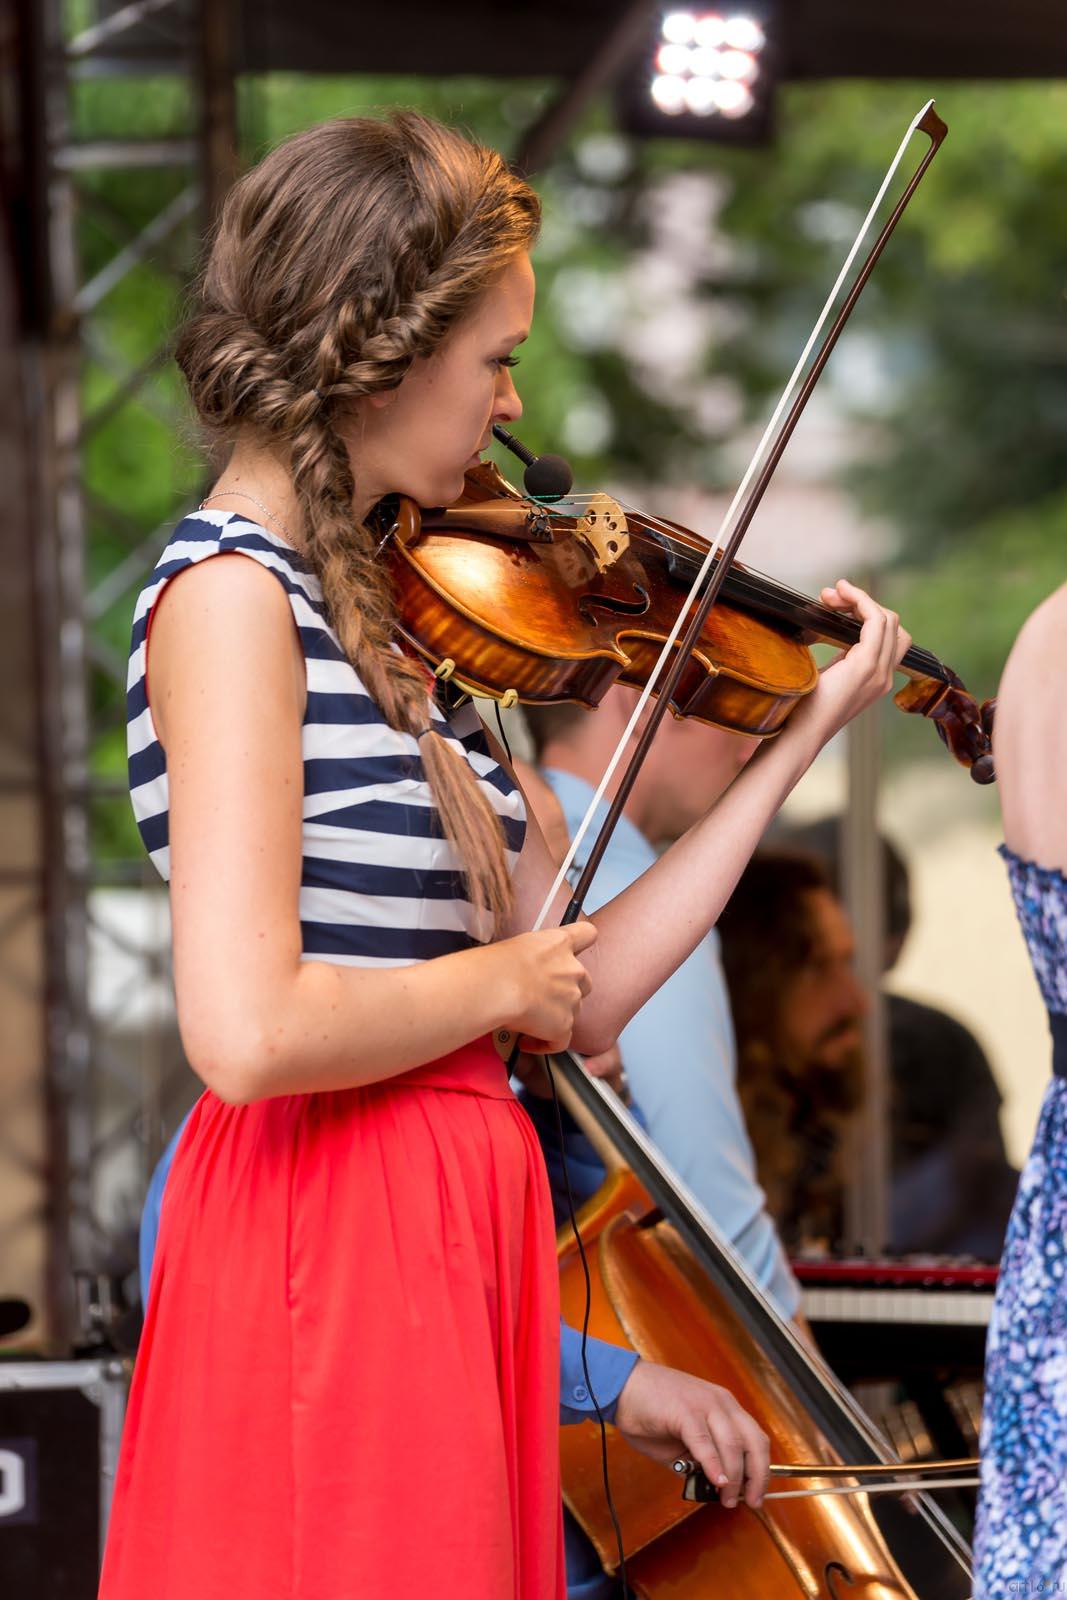 На­та­лья Го­луб (Natalia Golub) — альт (viola)::24 июля 2014 «Authentic Light Orchestra» (Швейцария)